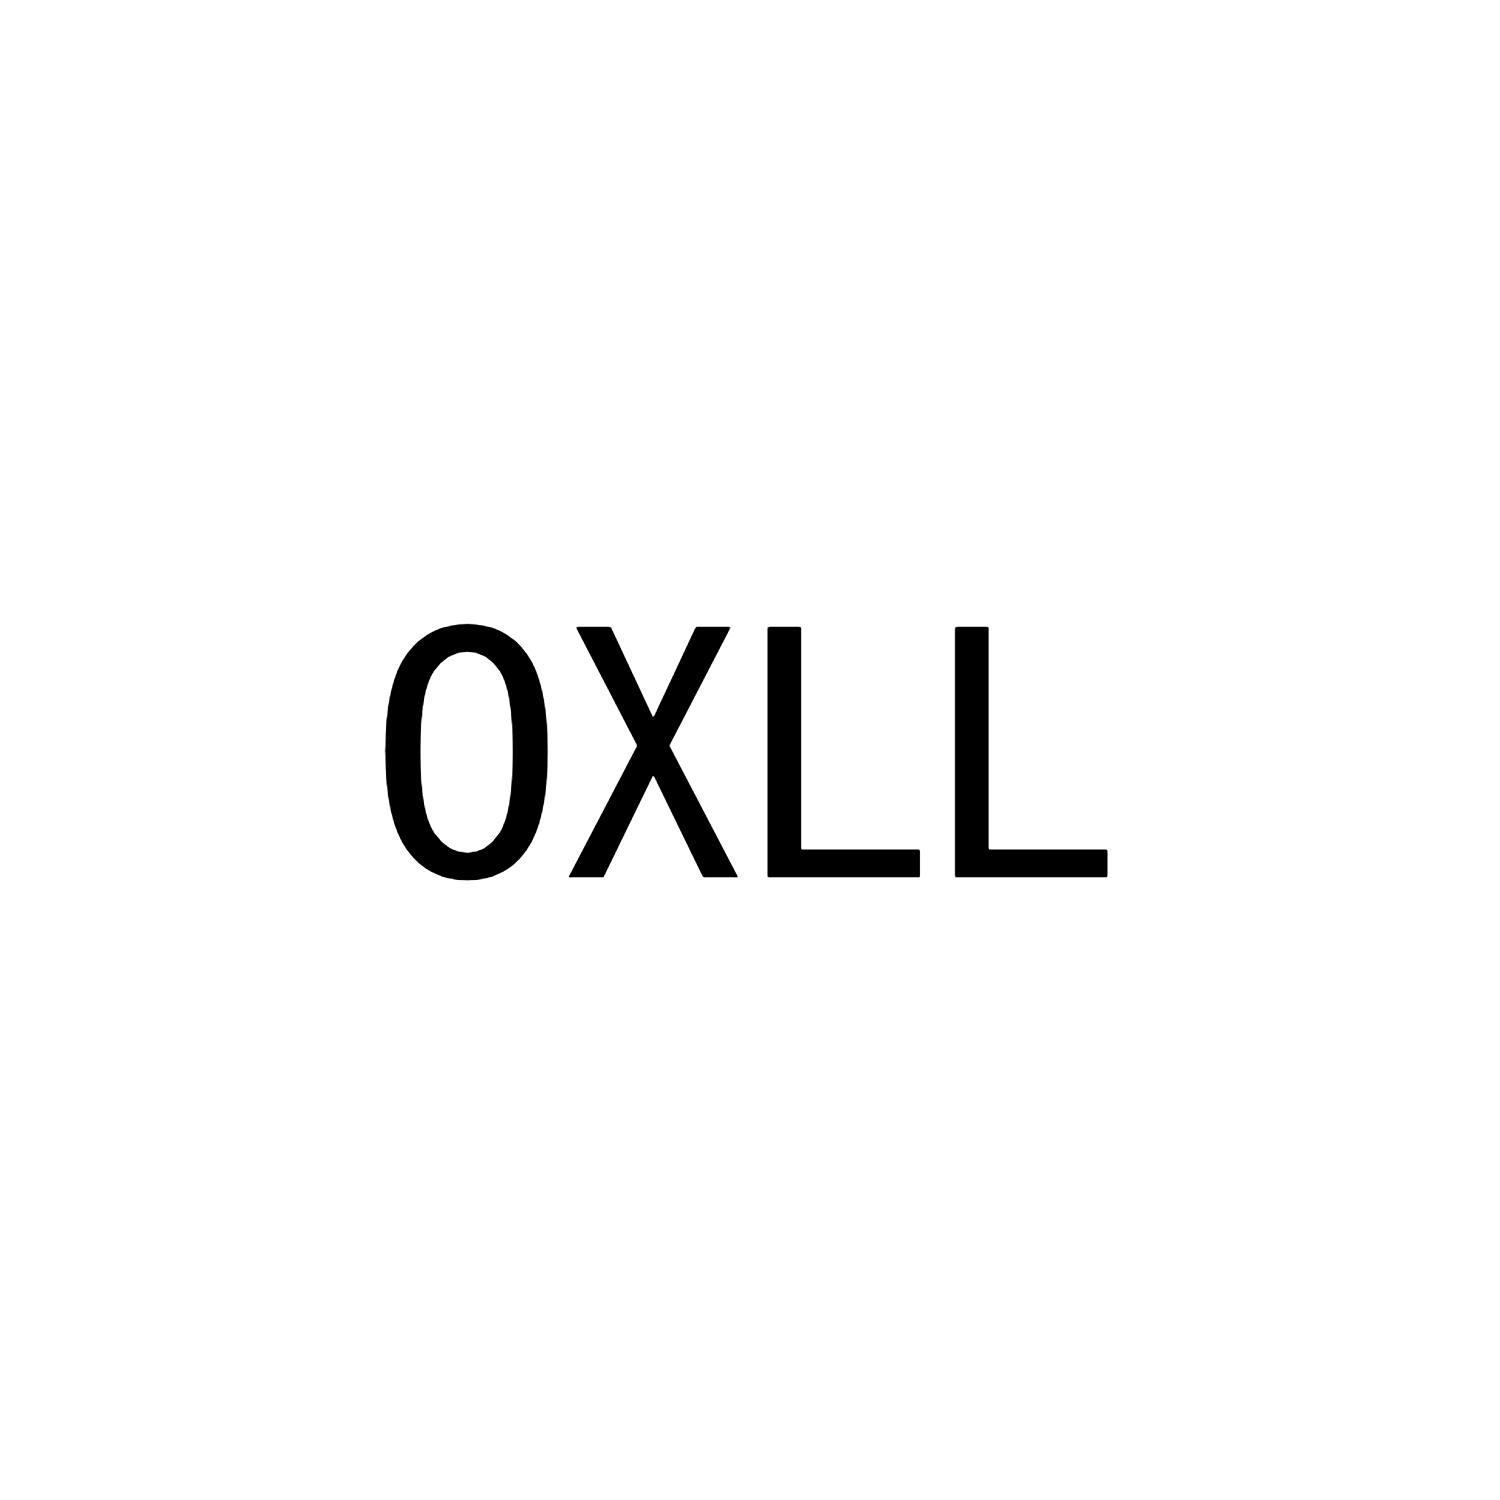 OXLL